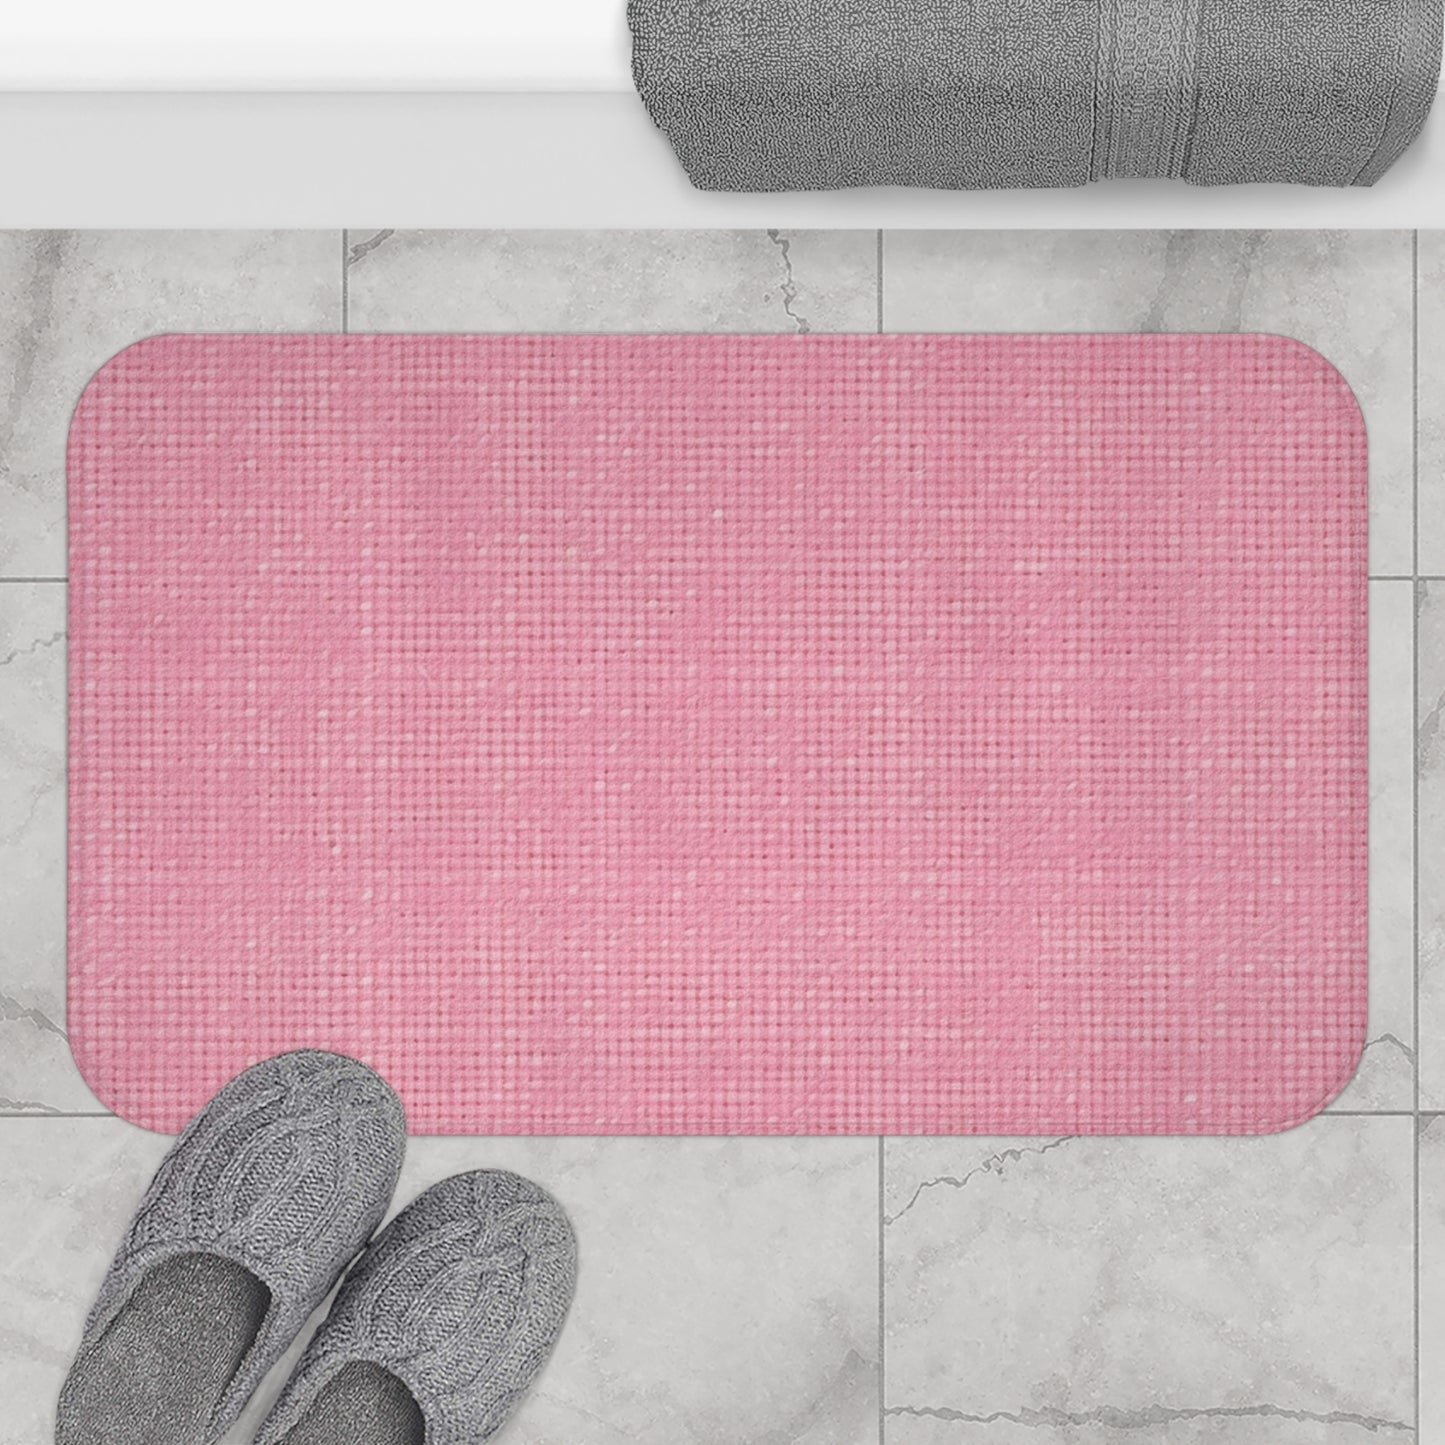 Pastel Rose Pink: Denim-Inspired, Refreshing Fabric Design - Bath Mat